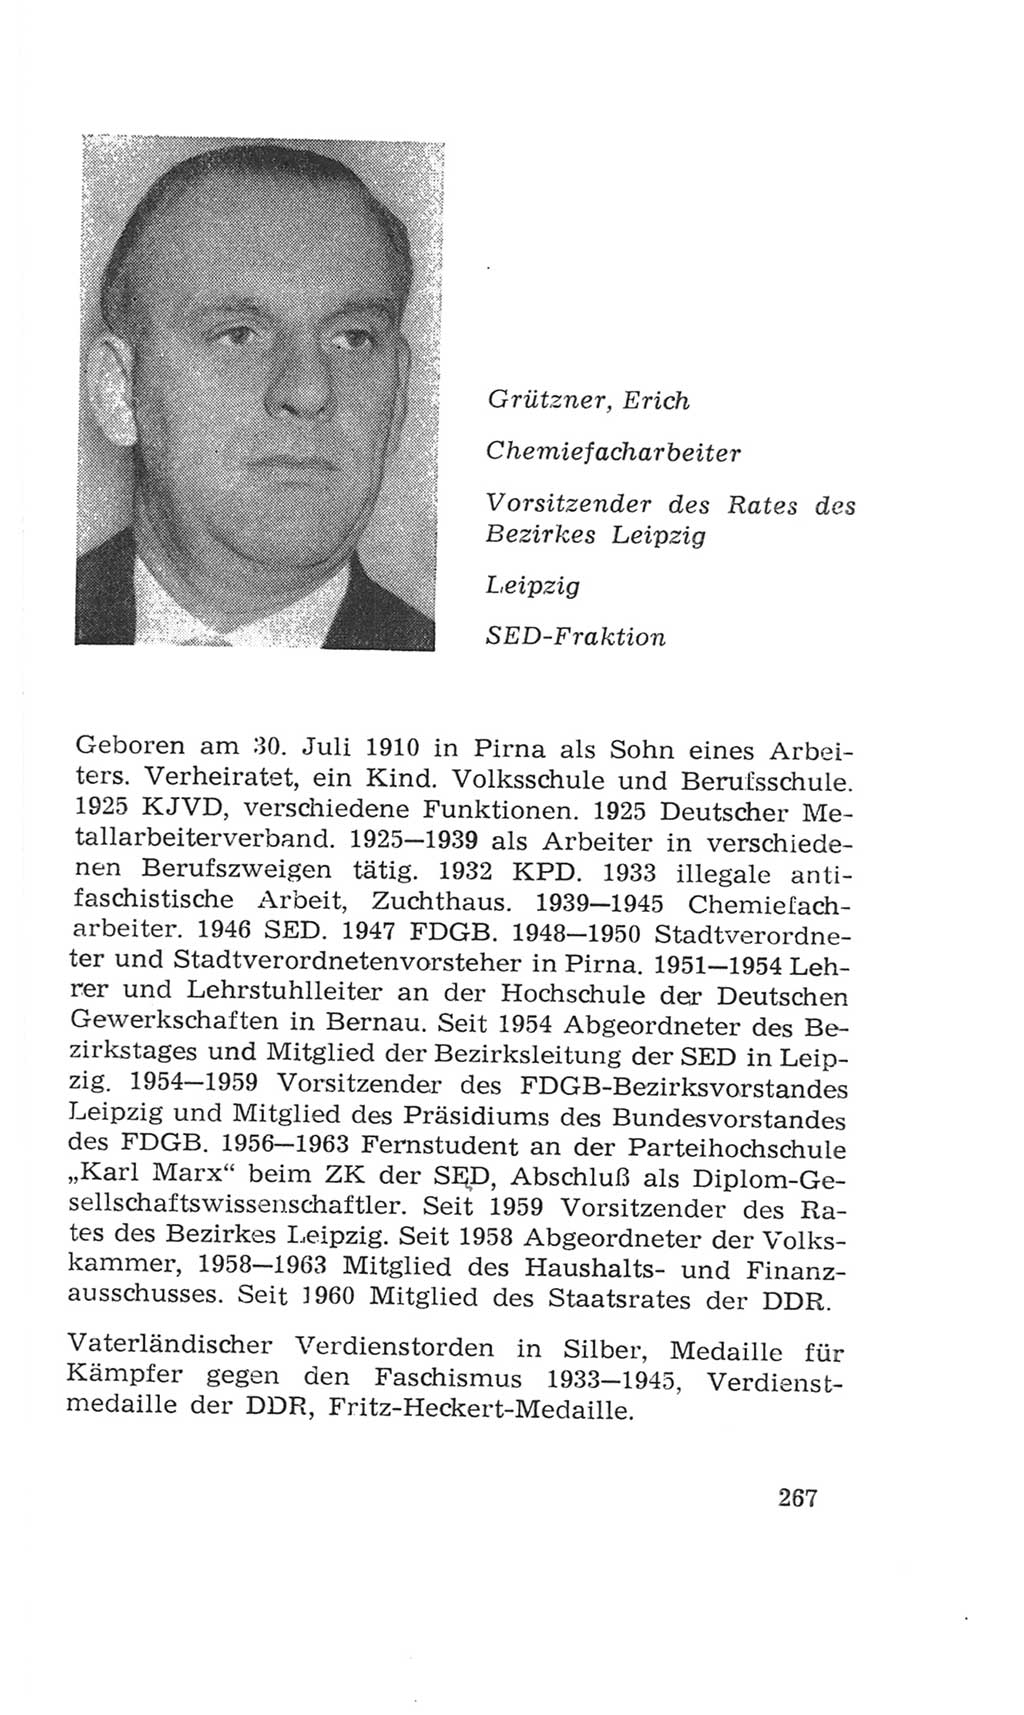 Volkskammer (VK) der Deutschen Demokratischen Republik (DDR), 4. Wahlperiode 1963-1967, Seite 267 (VK. DDR 4. WP. 1963-1967, S. 267)